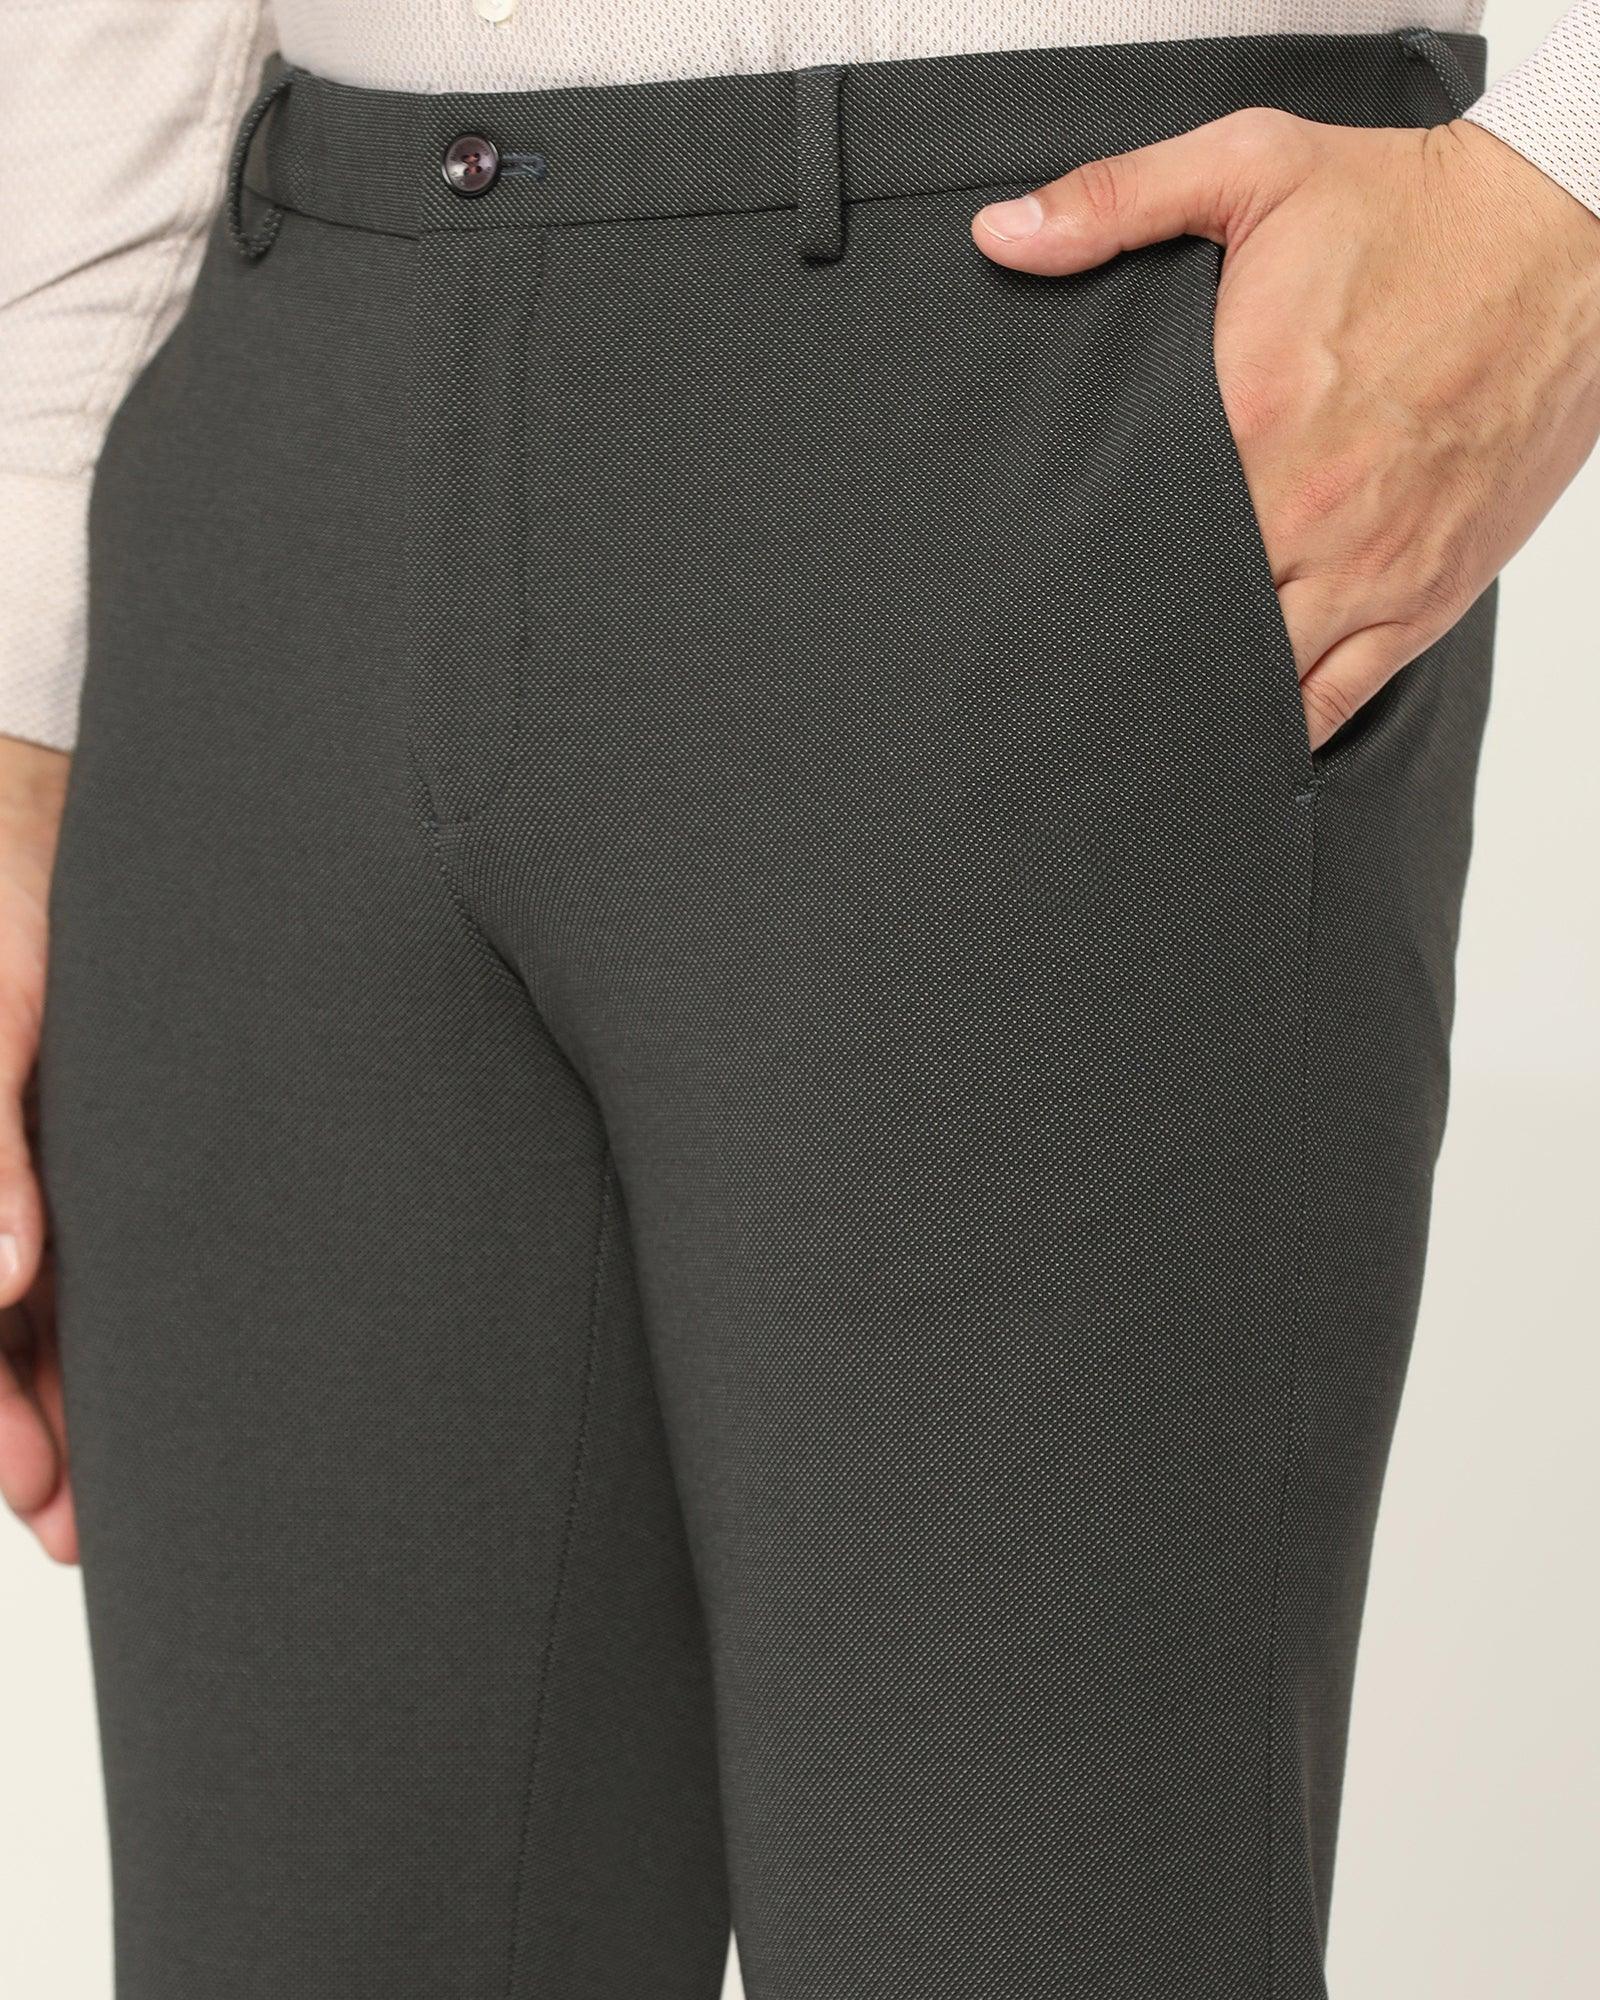 Slim Fit B-91 Formal Black Textured Trouser - Lenor